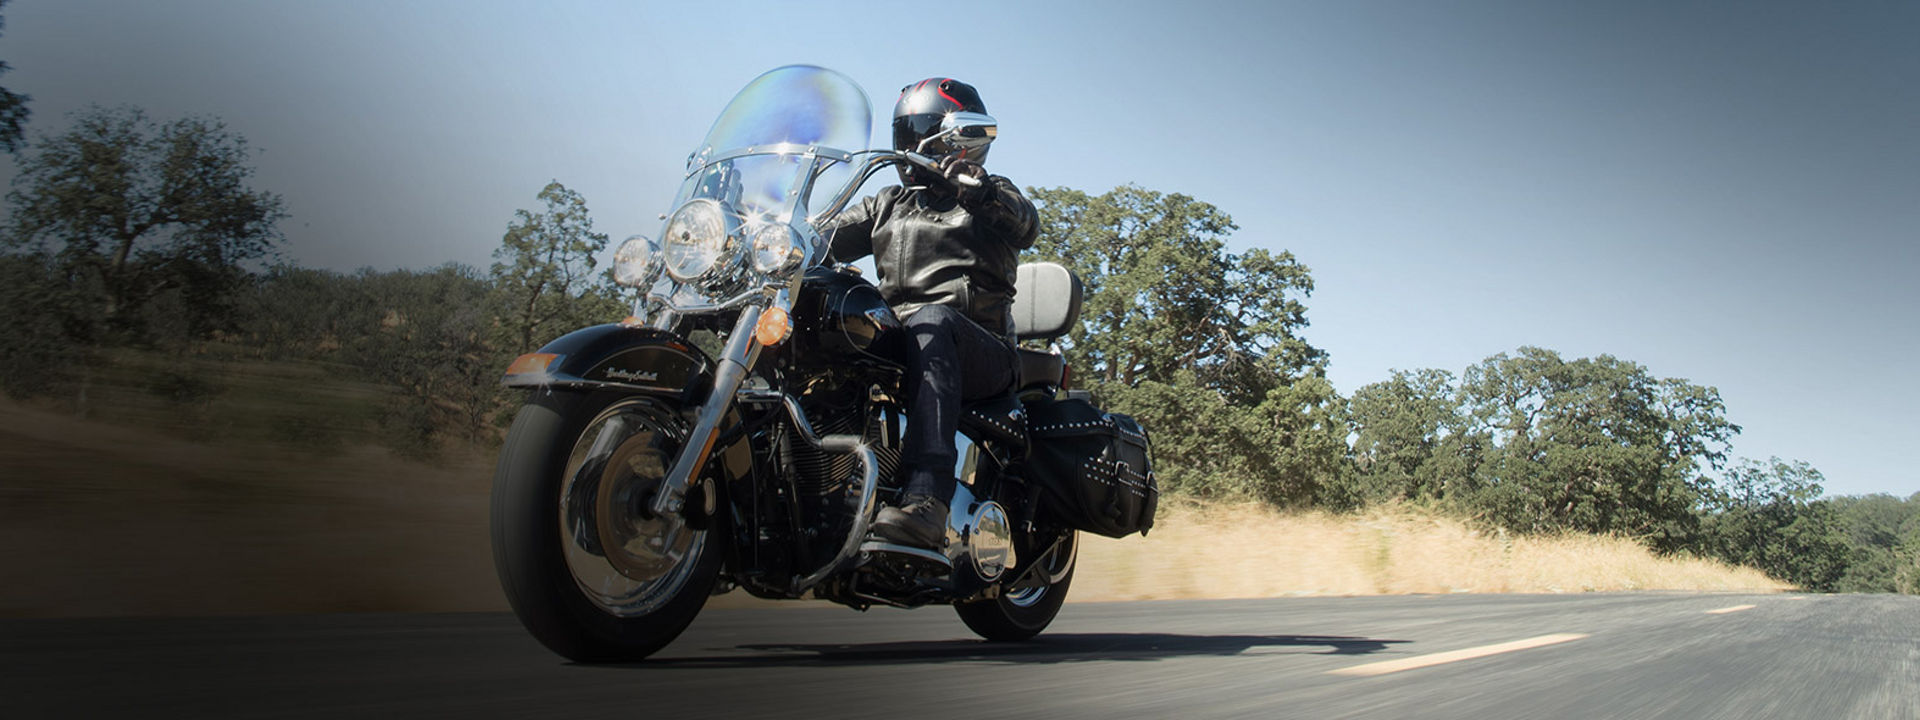 Na ovoj slici prikazan je motociklist koji se vozi na regionalnoj prometnici motociklom s prilagođenim gumama za motocikl Bridgestone.